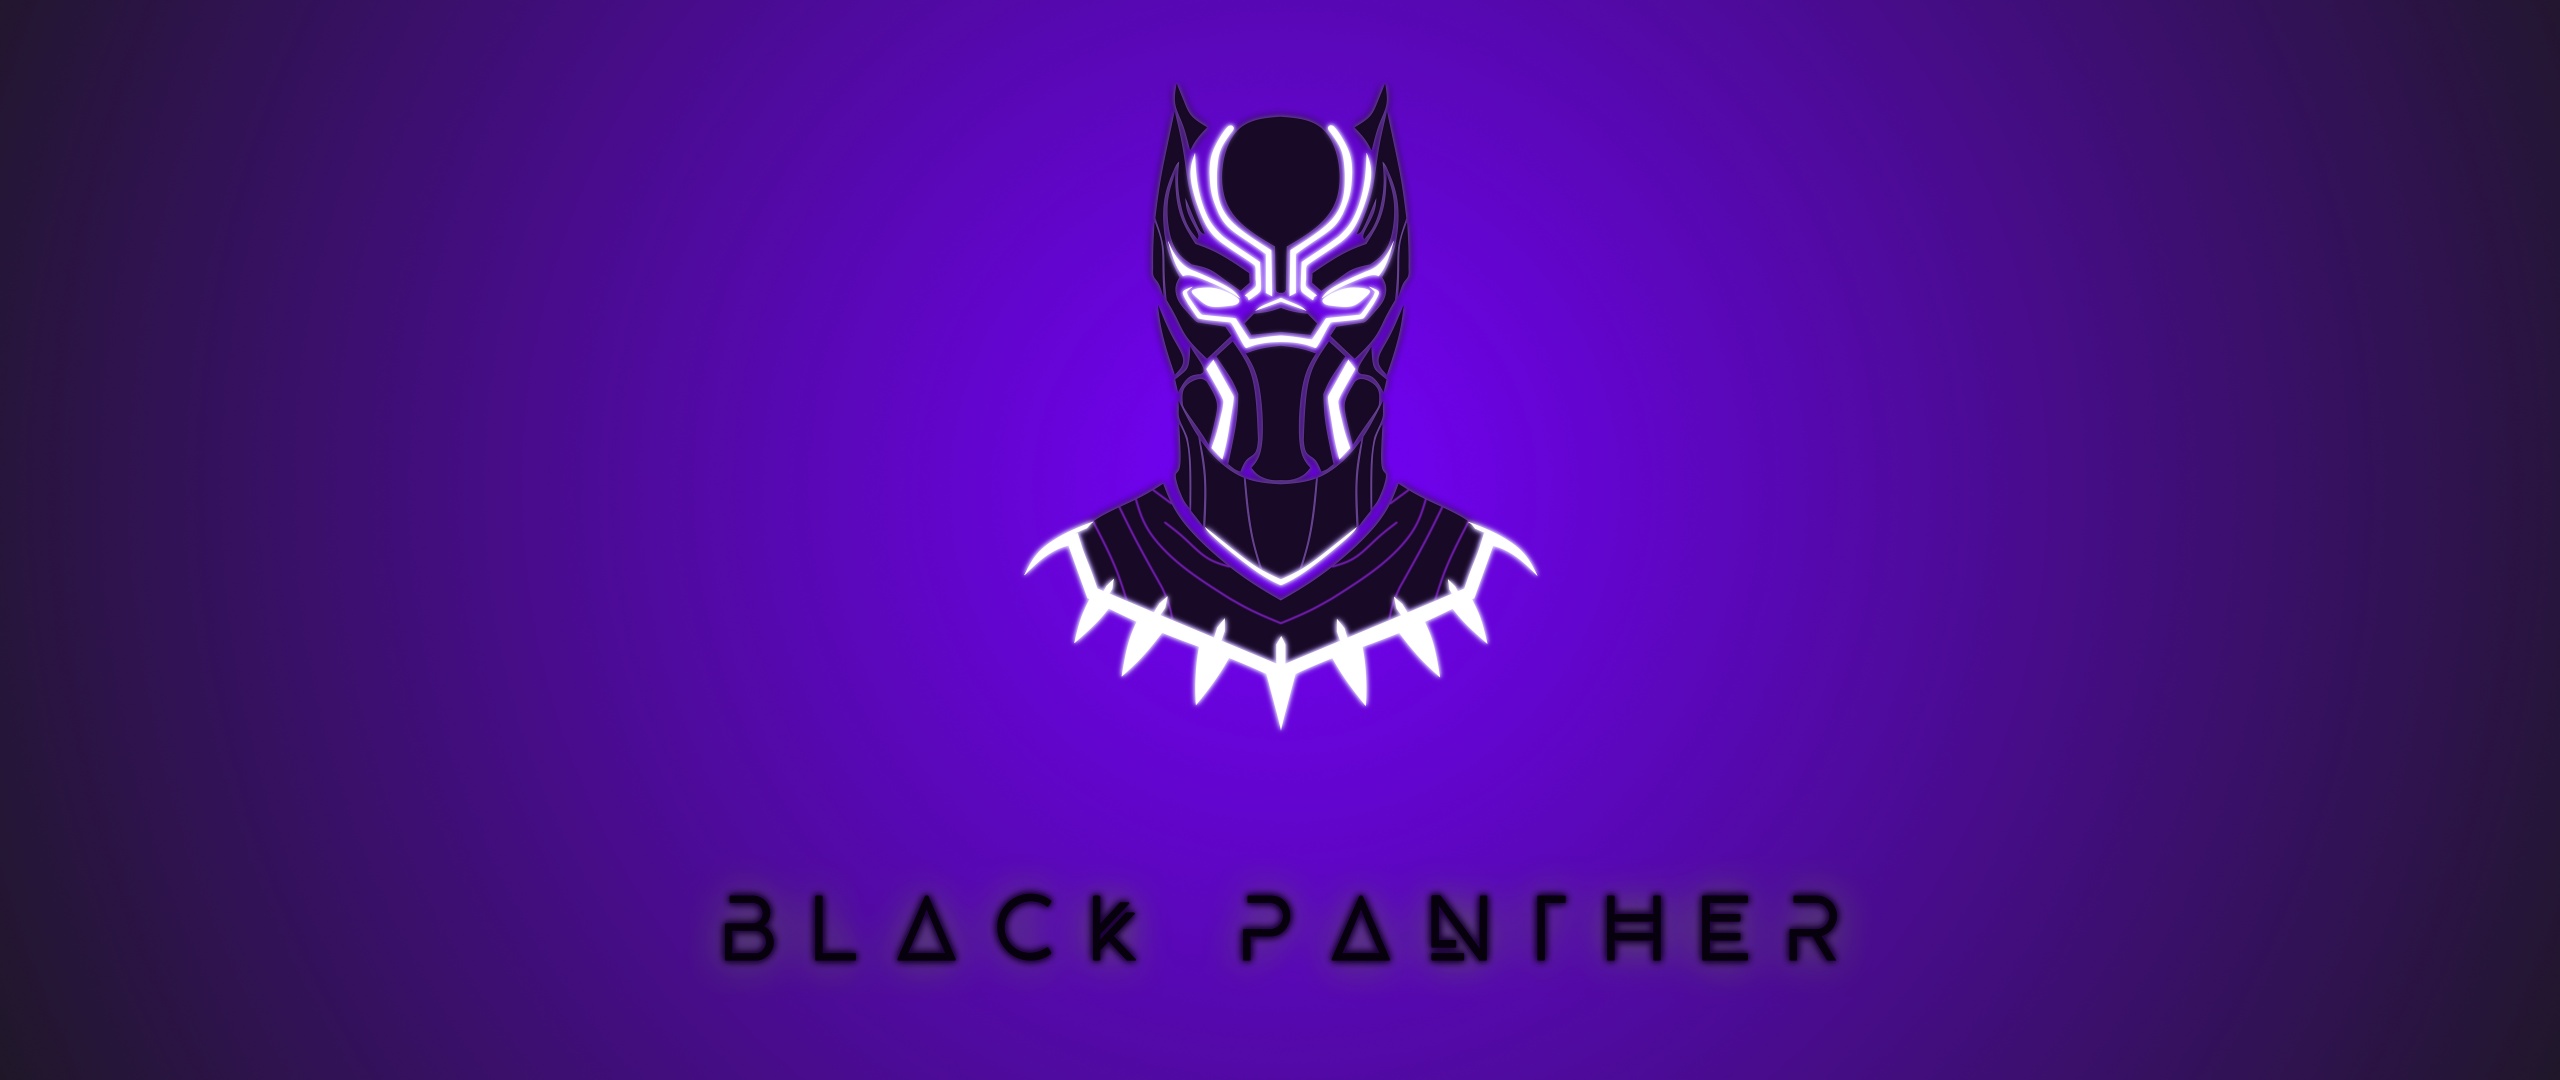 Hình nền Đen Panther 4K, Nghệ thuật tối giản, Đồ họa CGI: Hình nền đen Panther 4K hiện đại, độc đáo và nghệ thuật tối giản sẽ khiến bạn thưởng thức tuyệt vời. Dưới đồ họa CGI chân thực, hình ảnh của siêu anh hùng đen Panther trở nên thật sự sống động và ấn tượng. Hãy cùng khám phá trải nghiệm thú vị này và tận hưởng độc đáo của hình nền đen Panther.